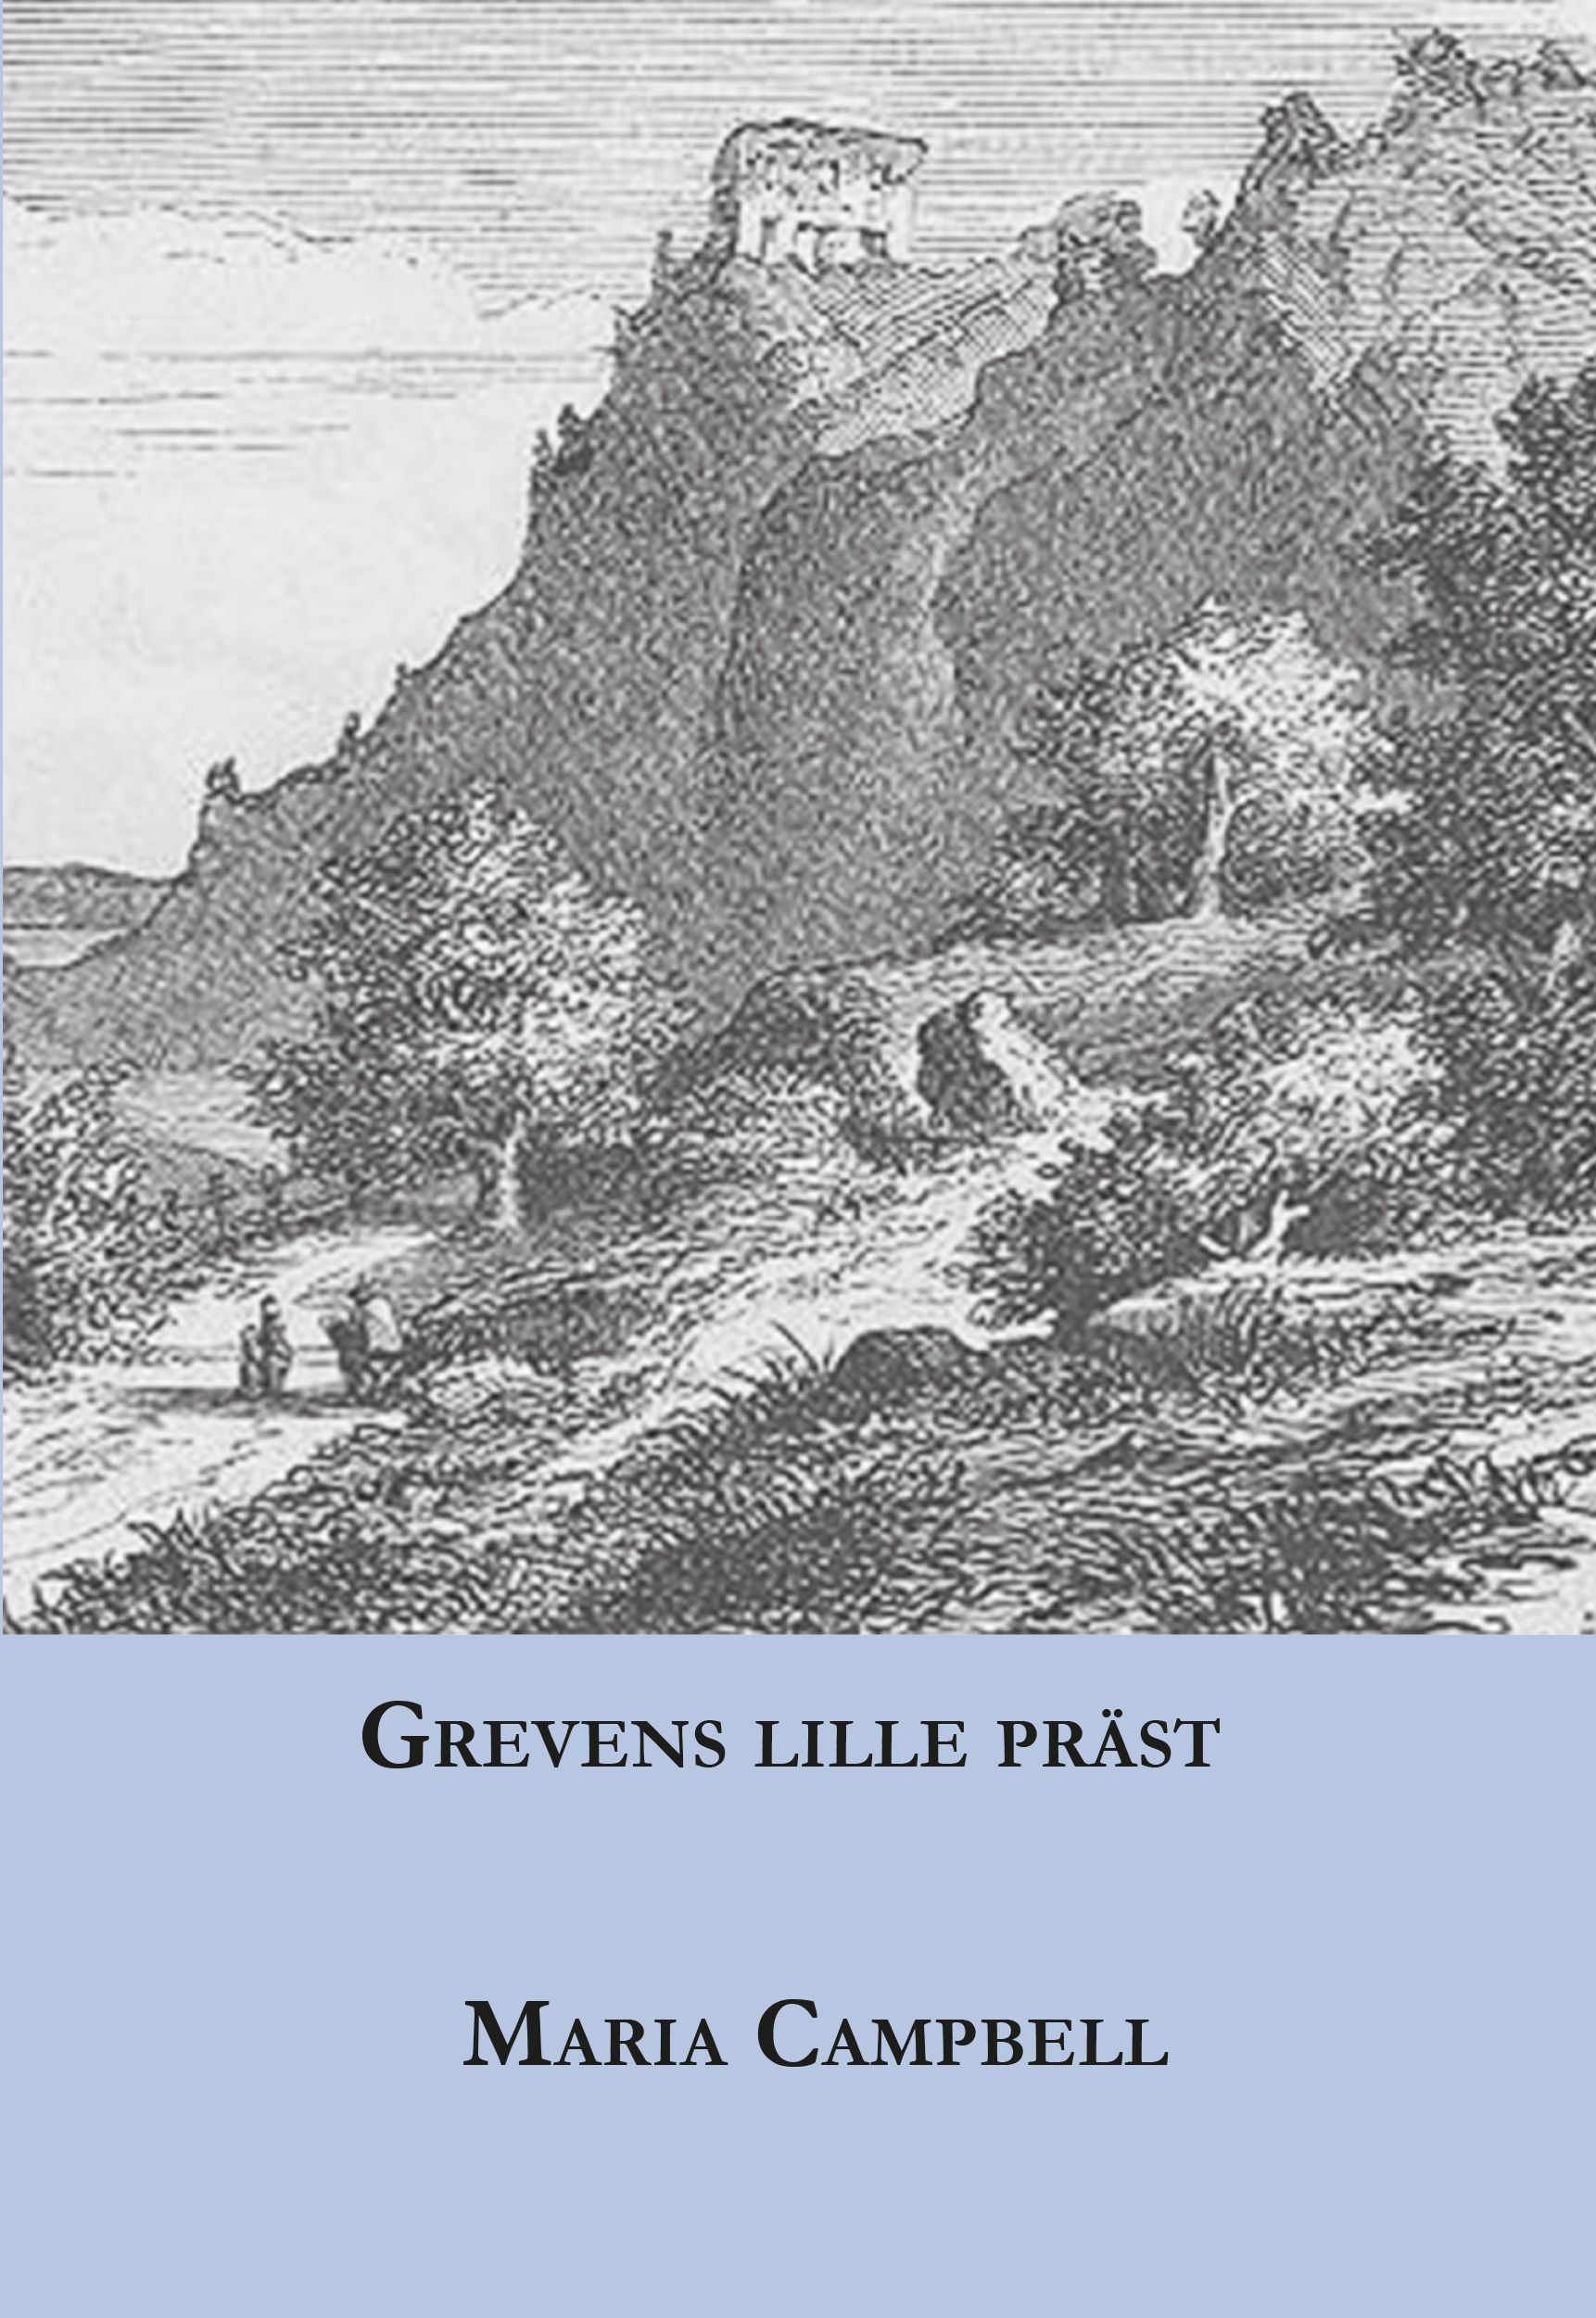 Grevens lille präst, e-bog af Maria Campbell